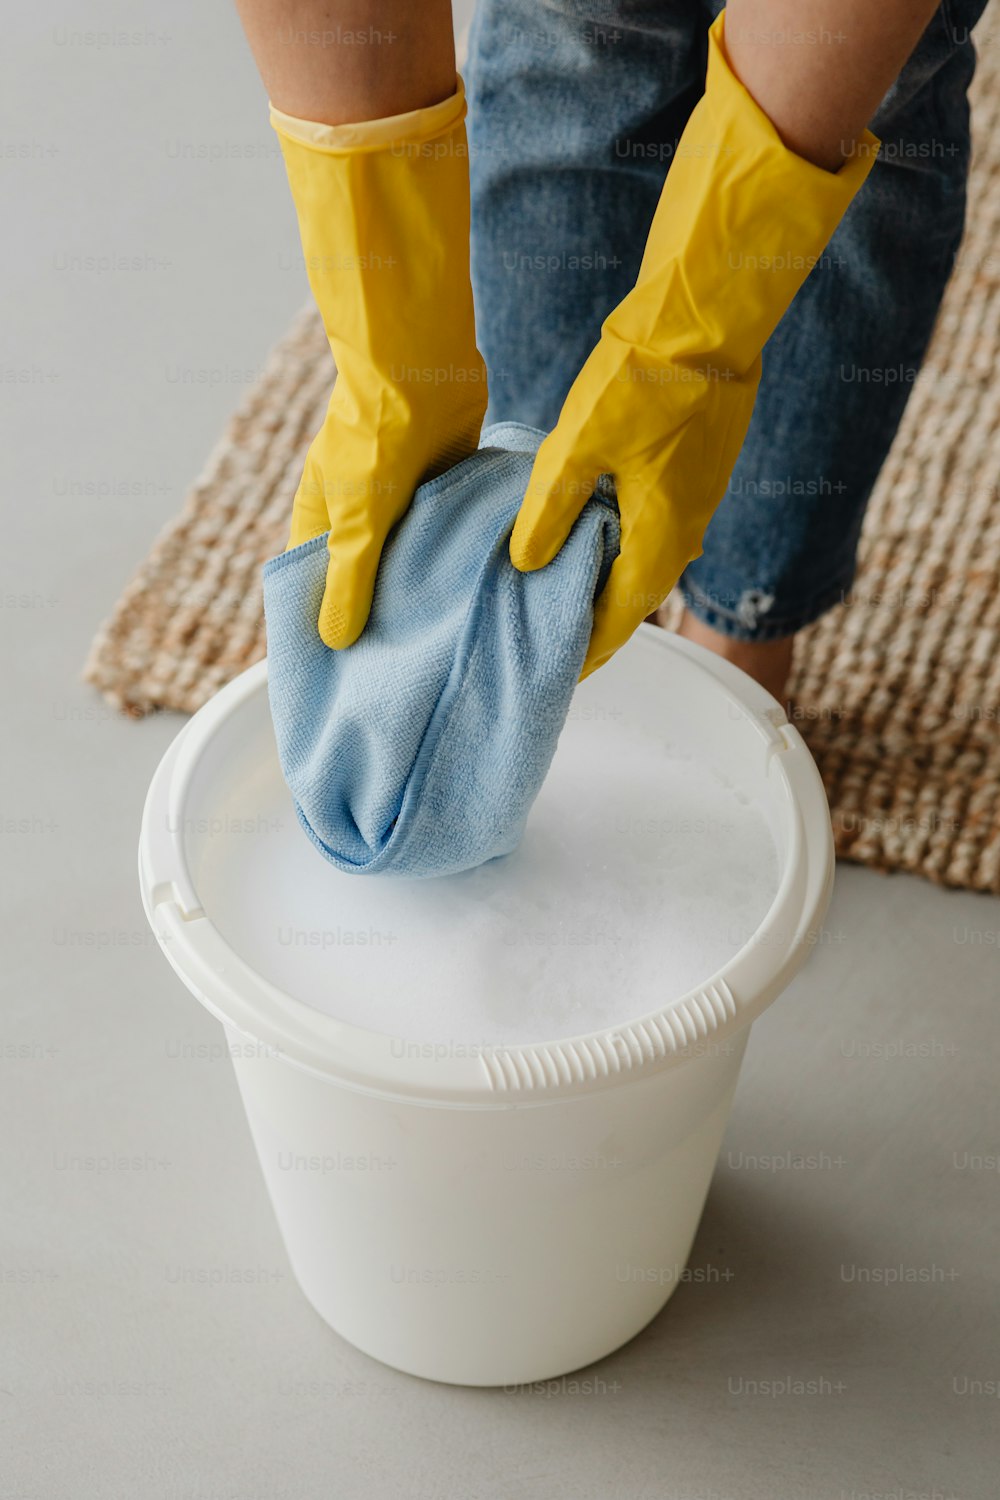 Una persona in guanti gialli che pulisce un secchio